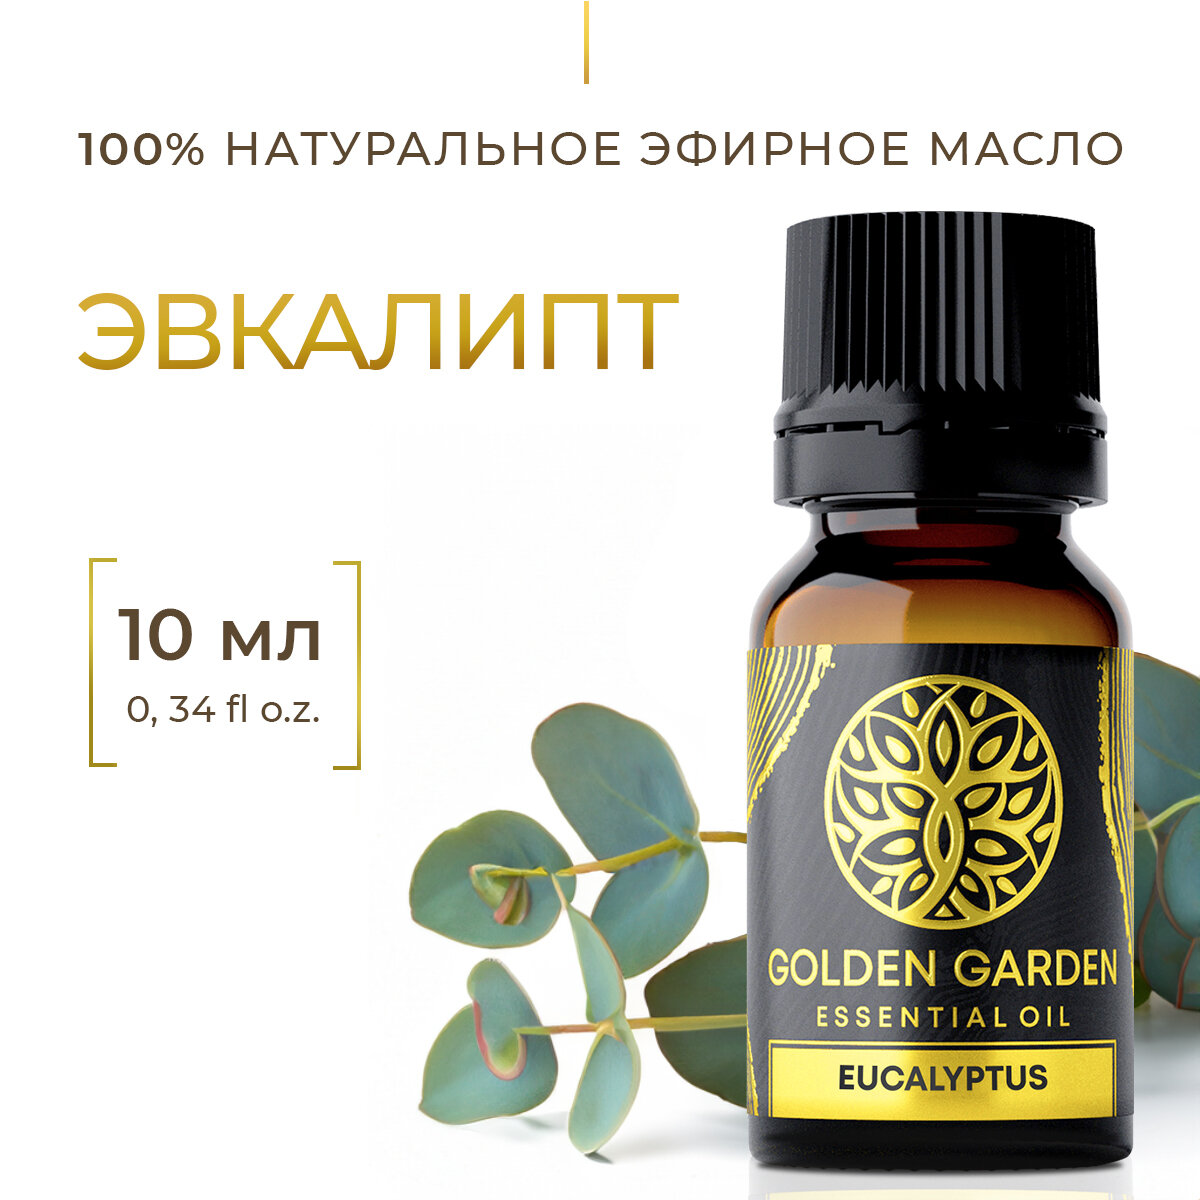 Натуральное Эфирное масло эвкалипт 10мл Golden Garden для ароматерапии, диффузора, бани и сауны